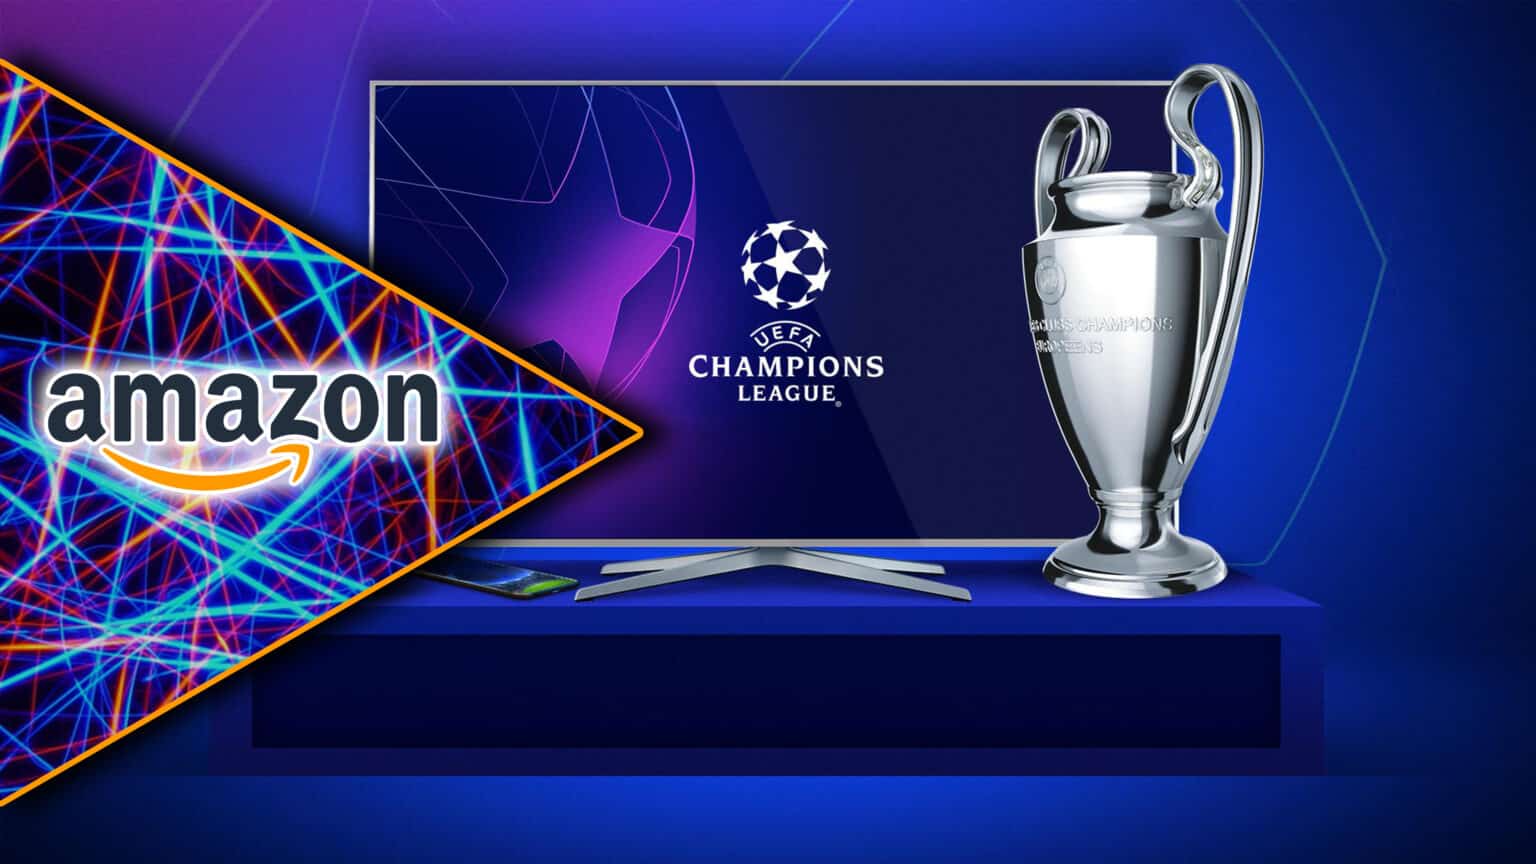 Amazon Prime Video: La Champions League sarà trasmessa in 4K HDR. Alla